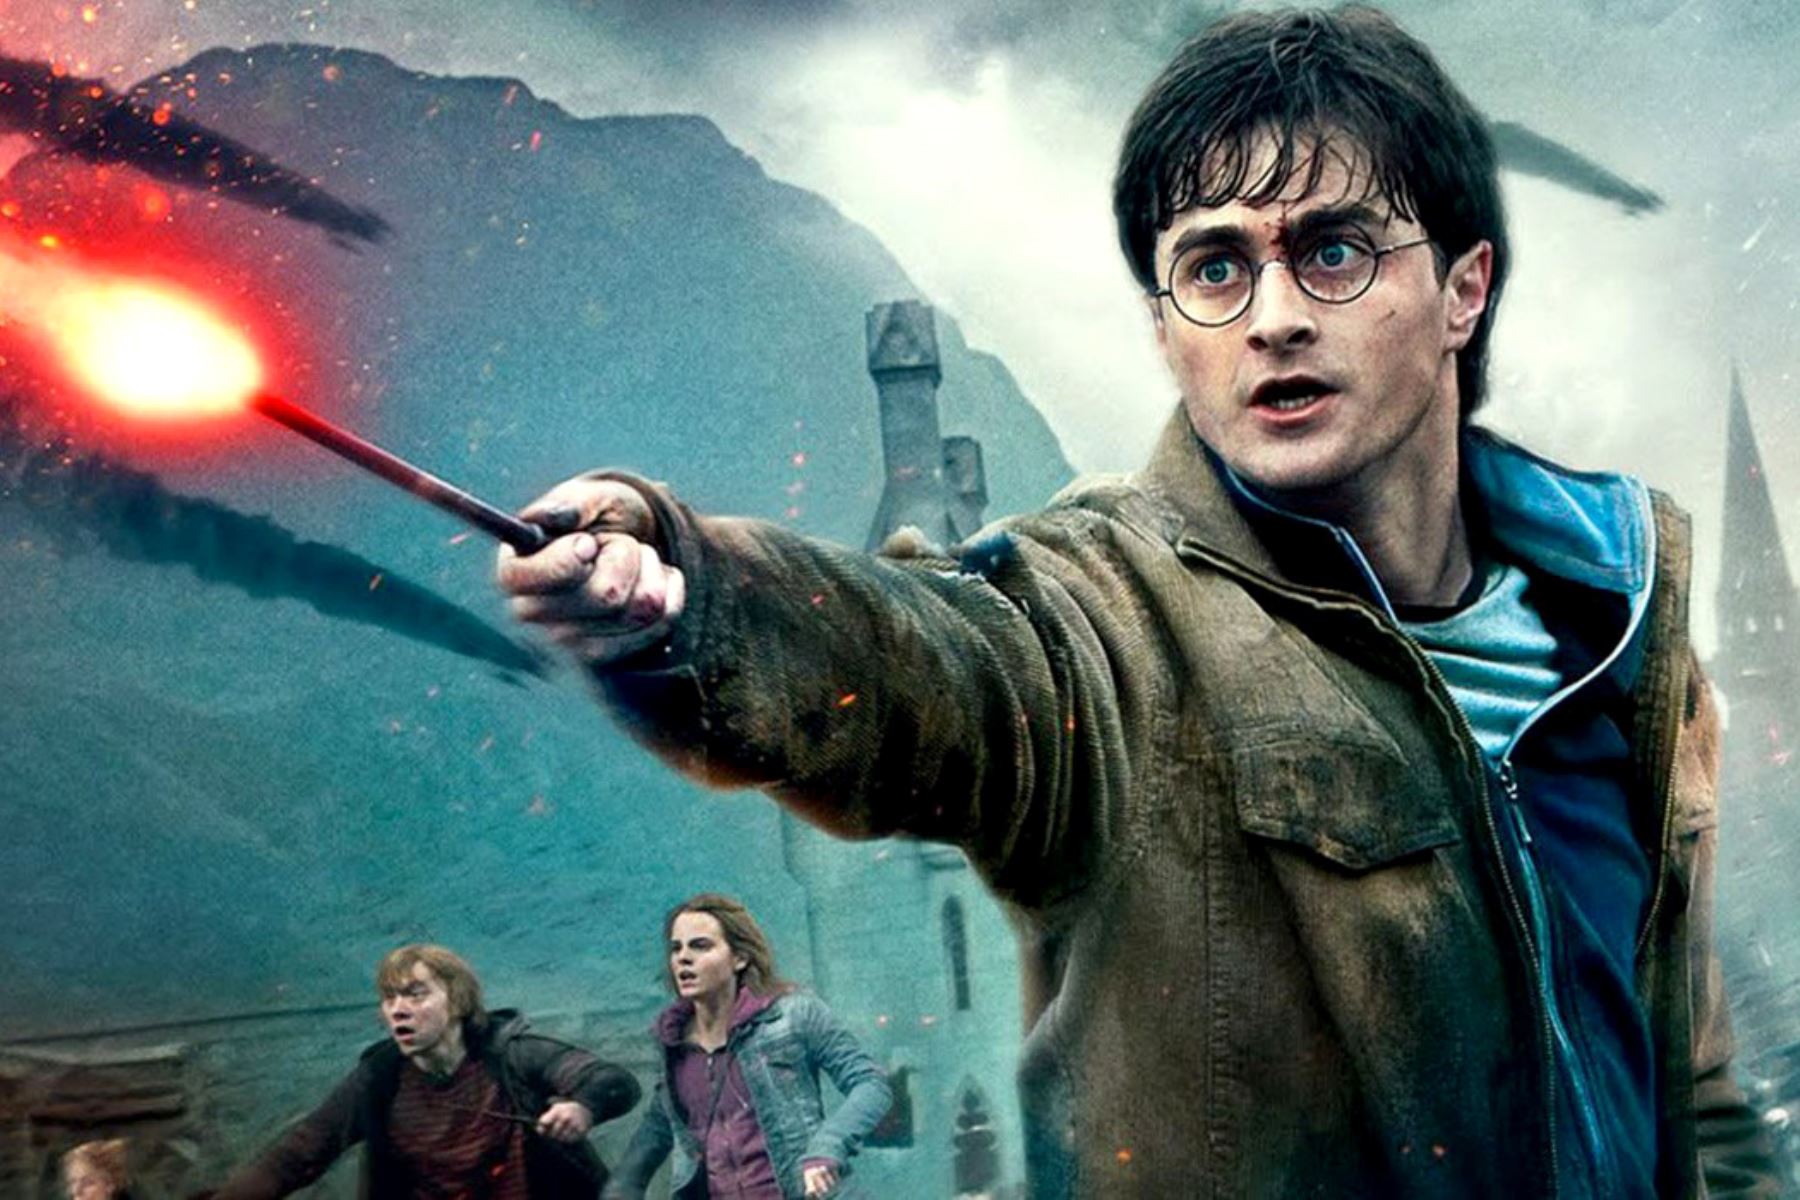 La varita que maneja Daniel Radcliffe en "Harry Potter y el cáliz de fuego" (2005) estará a la venta con un precio estimado de entre 8,000 y 10,000 dólares. Foto: Internet